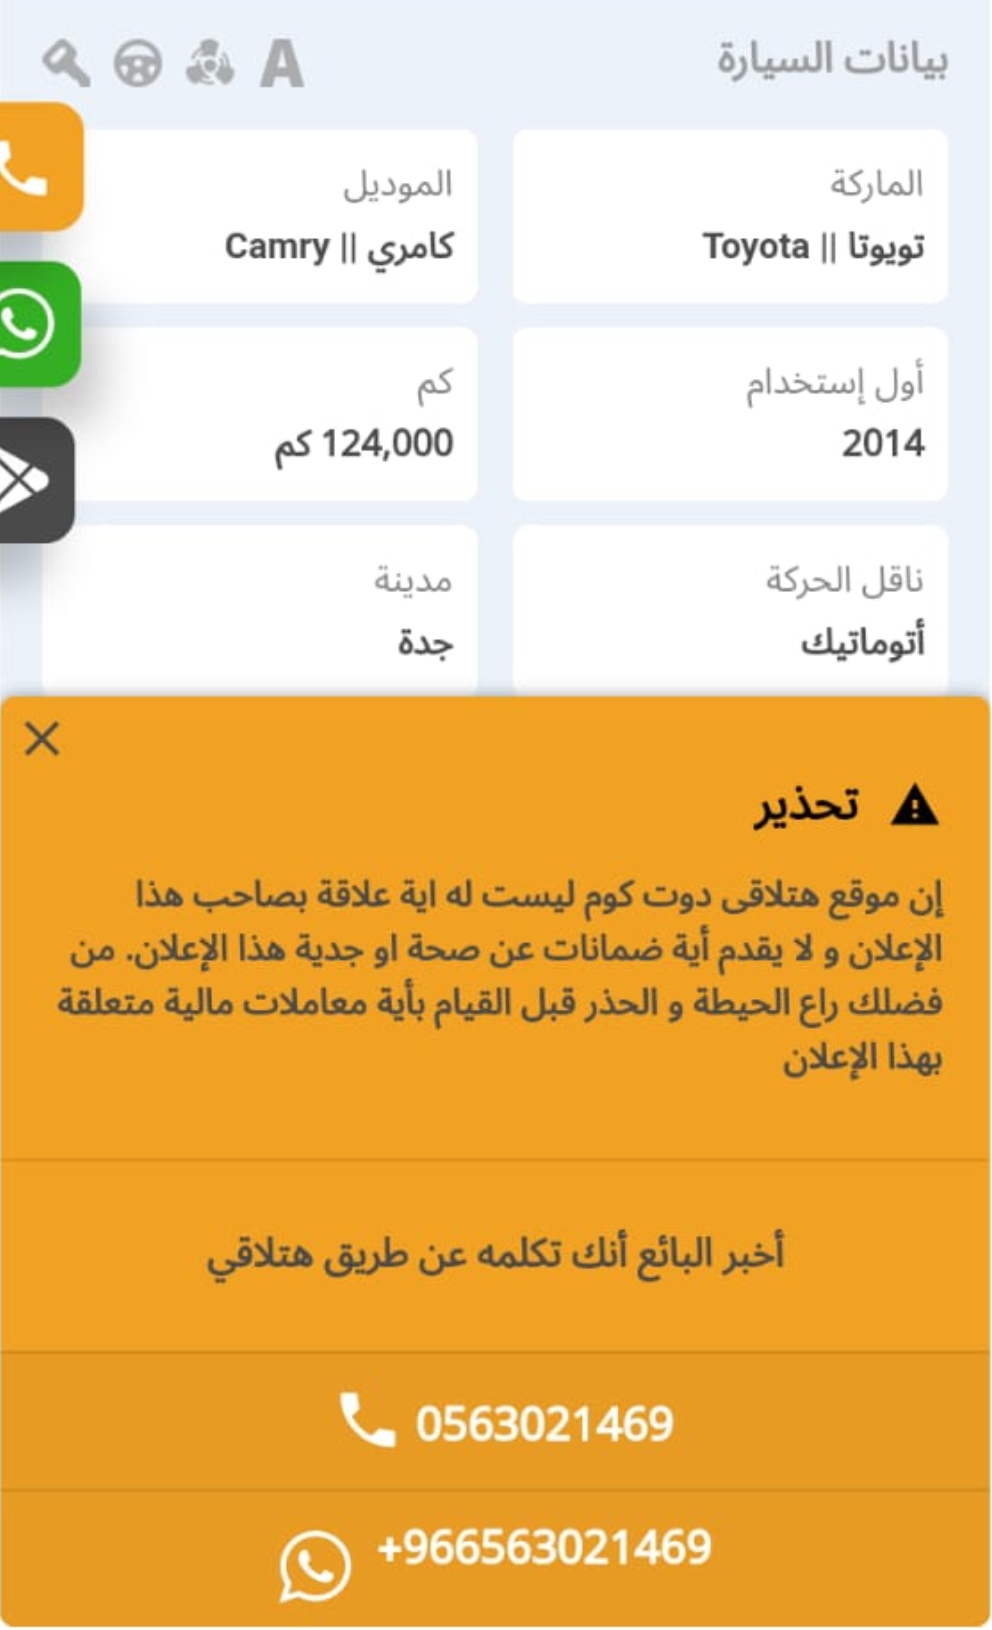 Screenshot ٢٠٢٣٠٥١٧ ٠٠٠٠٣٨ WhatsApp - مدونة التقنية العربية